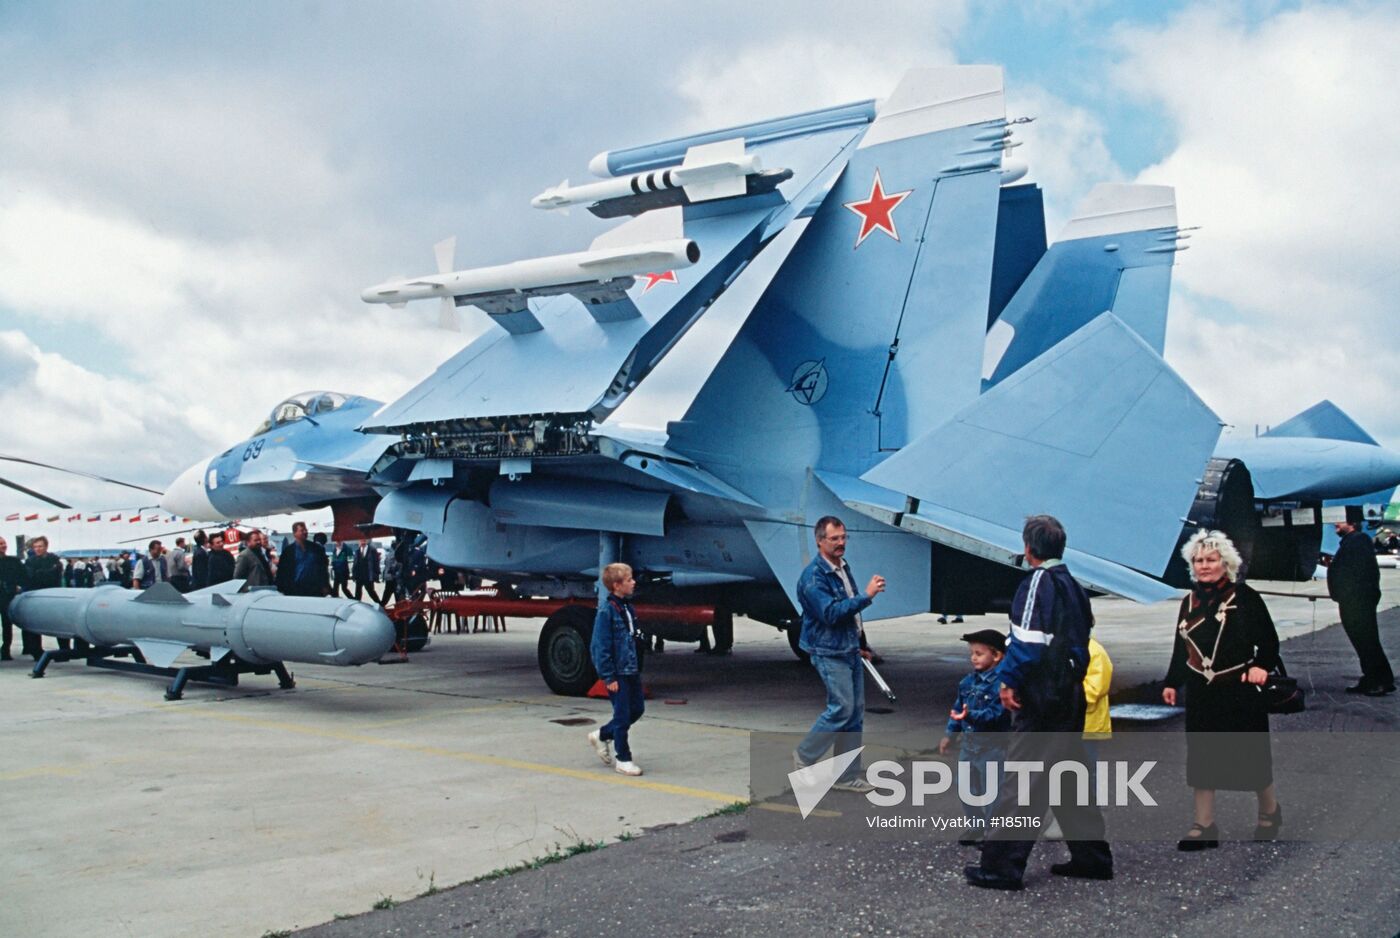 A Sukhoi Su-33 Flanker warplane